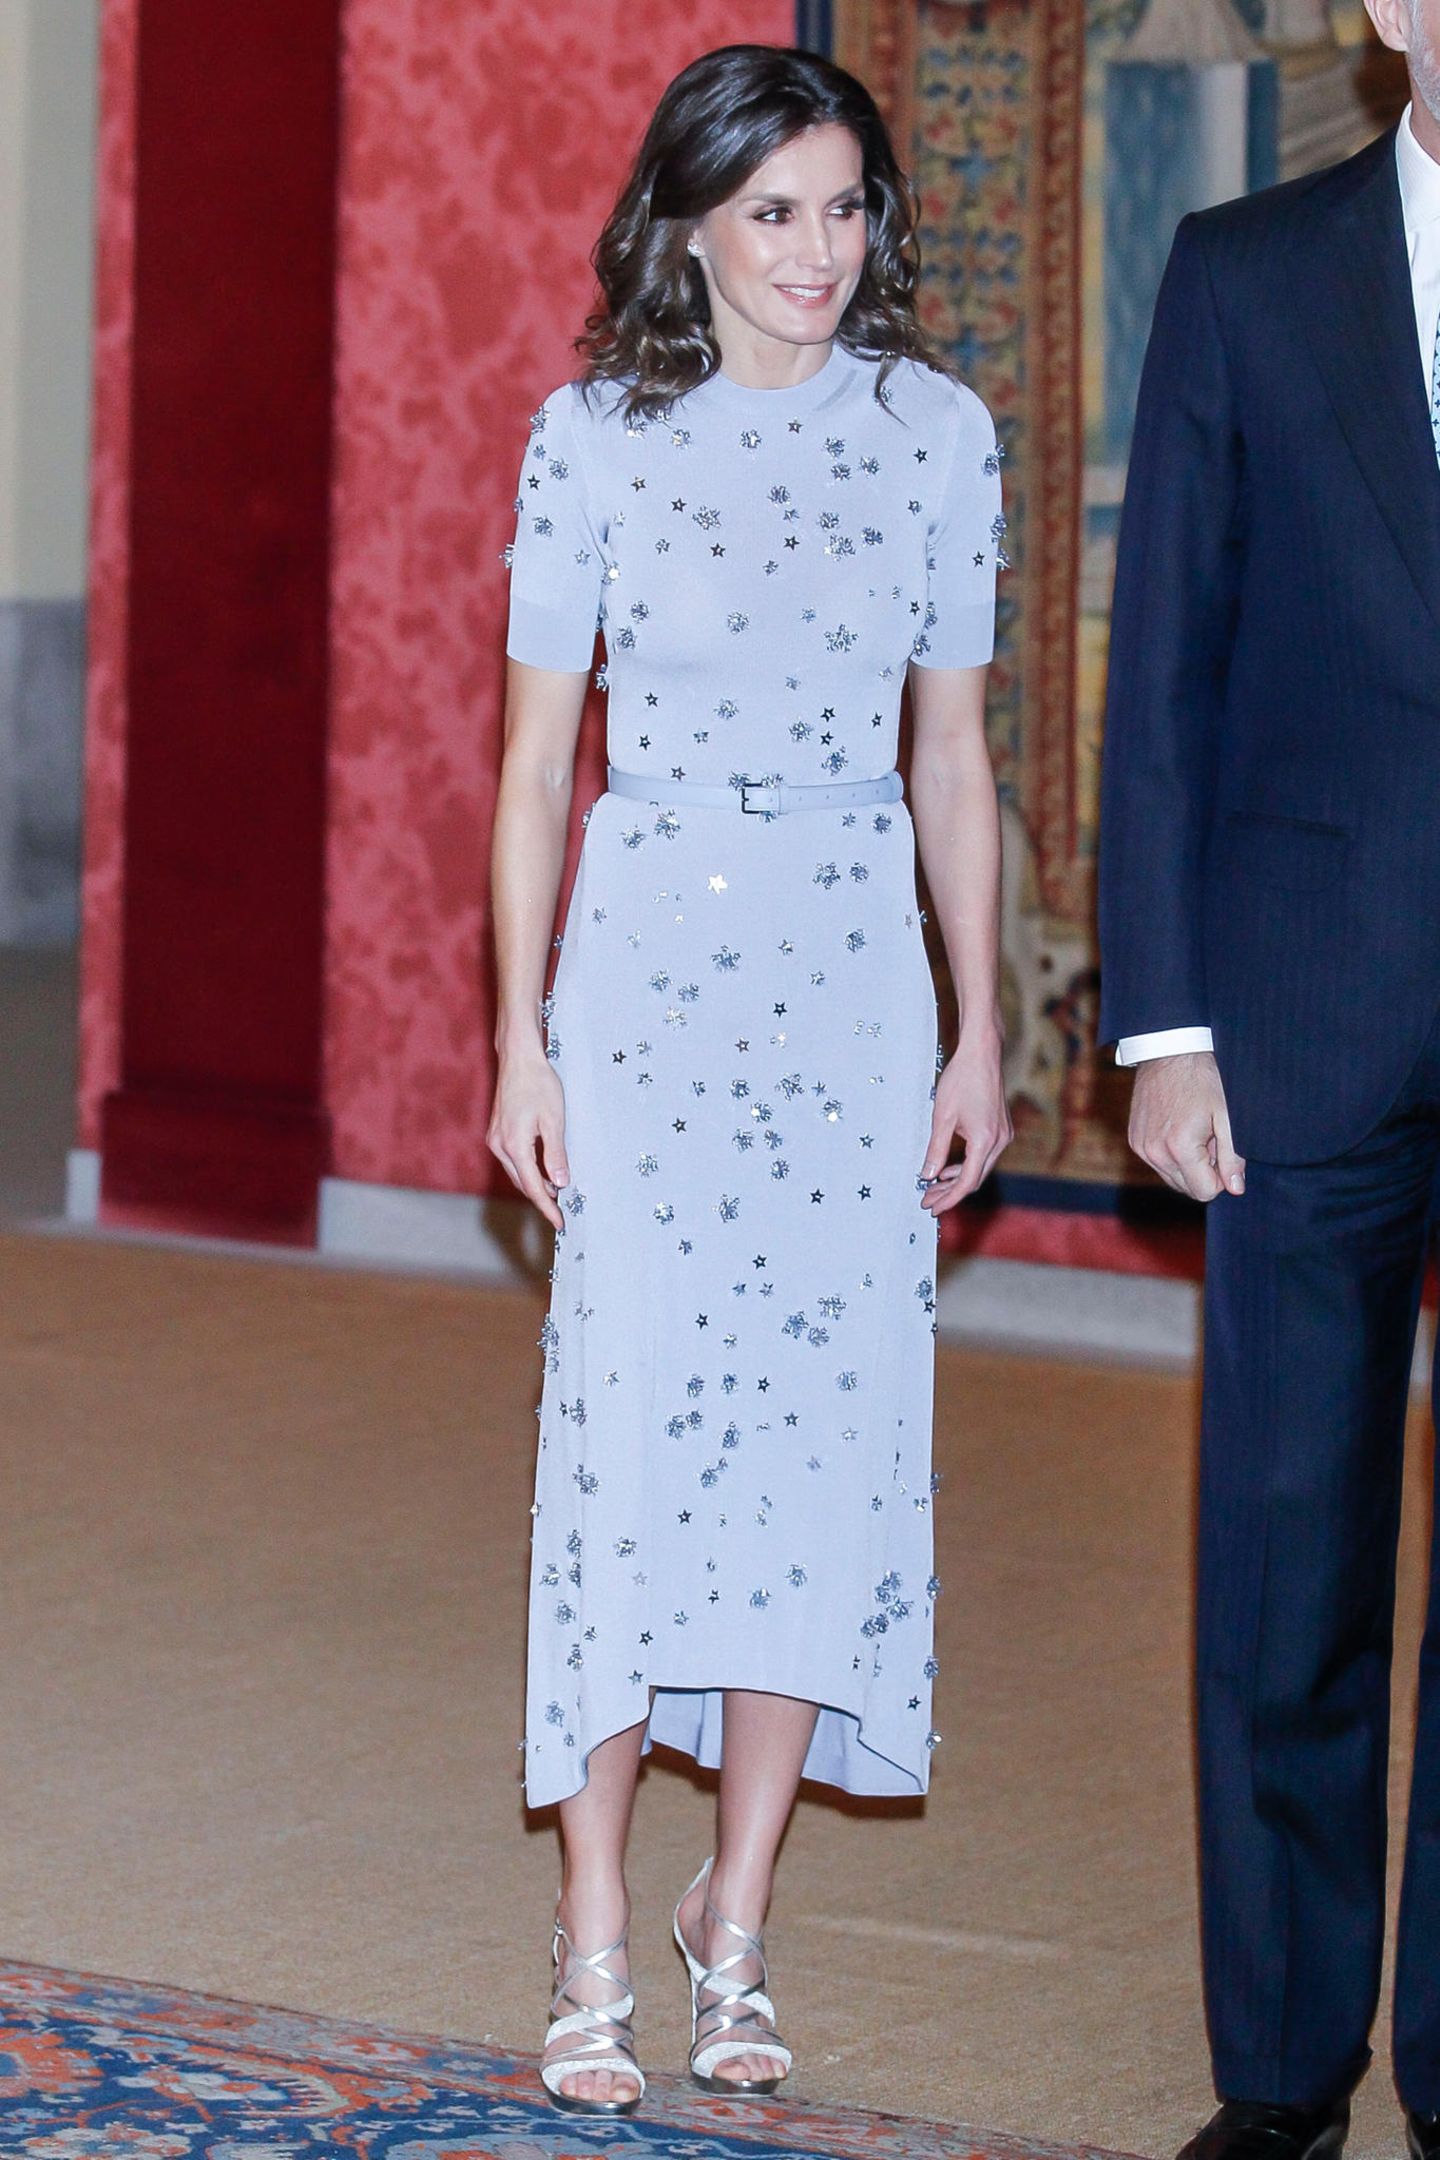 Zu einem Empfang im Februar 2019 zeigte sich Königin Letizia das erste Mal in dem wunderschönen Kleid von Nina Ricci. Das Dress in Midi-Länge besticht vor allem durch seine Pastellfarbe, dem zarten Taillengürtel und die kleinen 3D-Applikationen, die von ihrer Form an Sterne erinnern. 